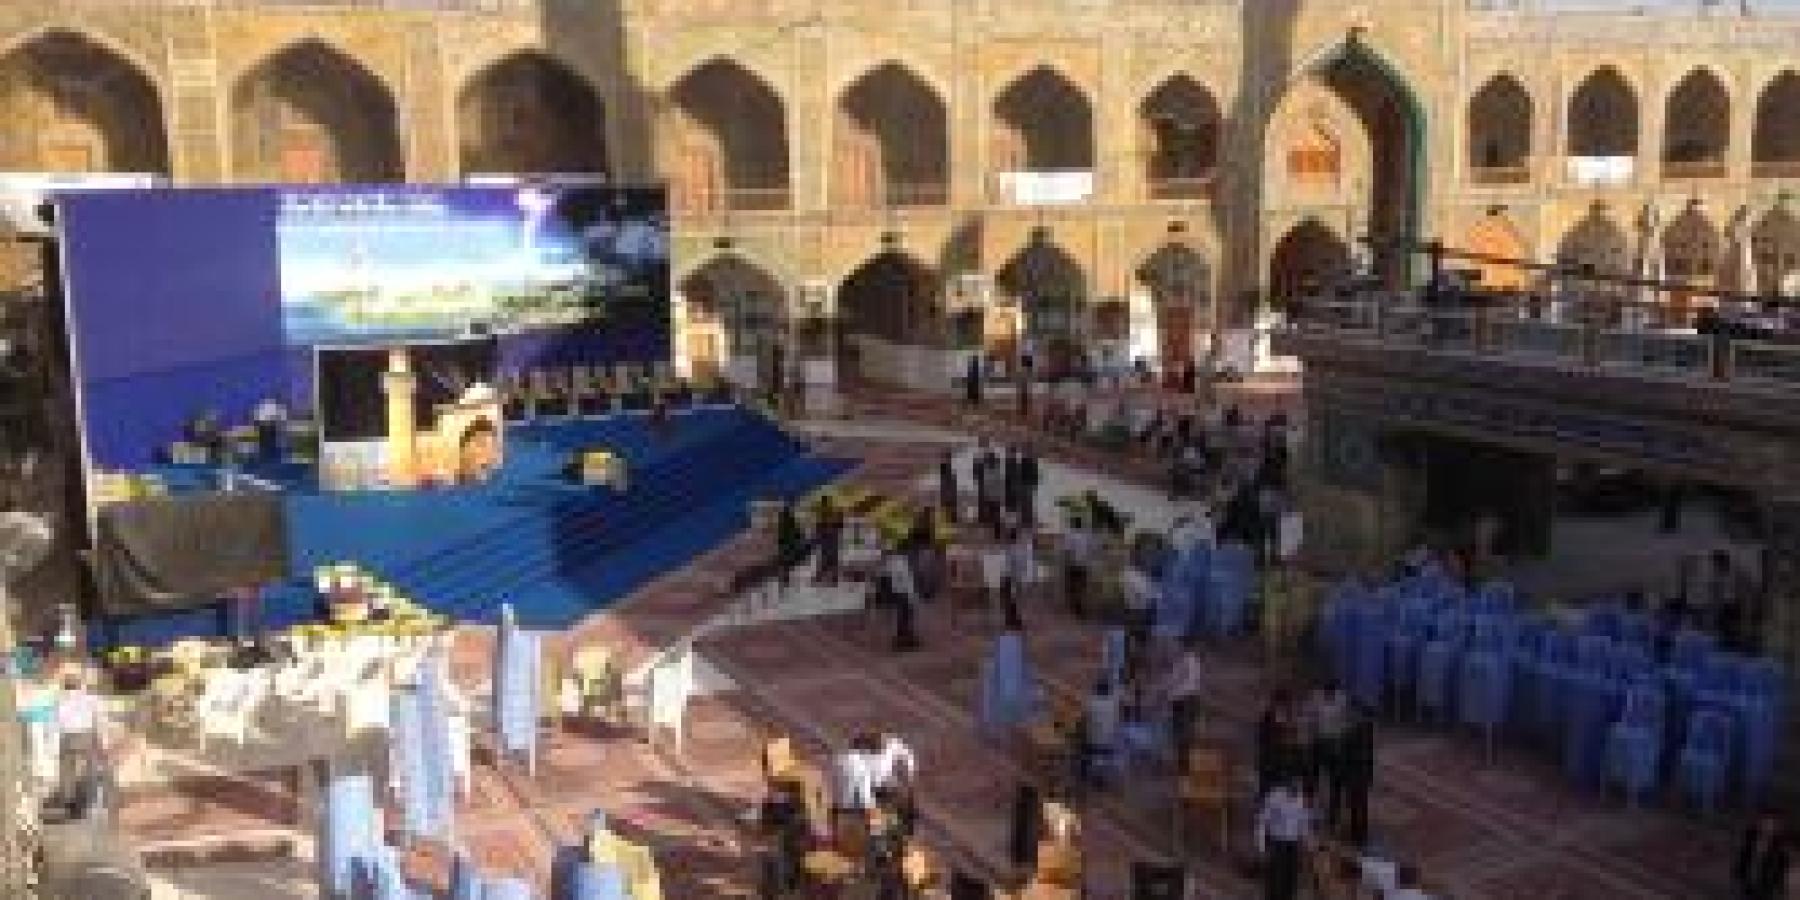 وضع اللمسات الأخيرة للمنصة الرئيسية الخاصة بانطلاق افتتاح فعاليات مهرجان الغدير العالمي الثالث